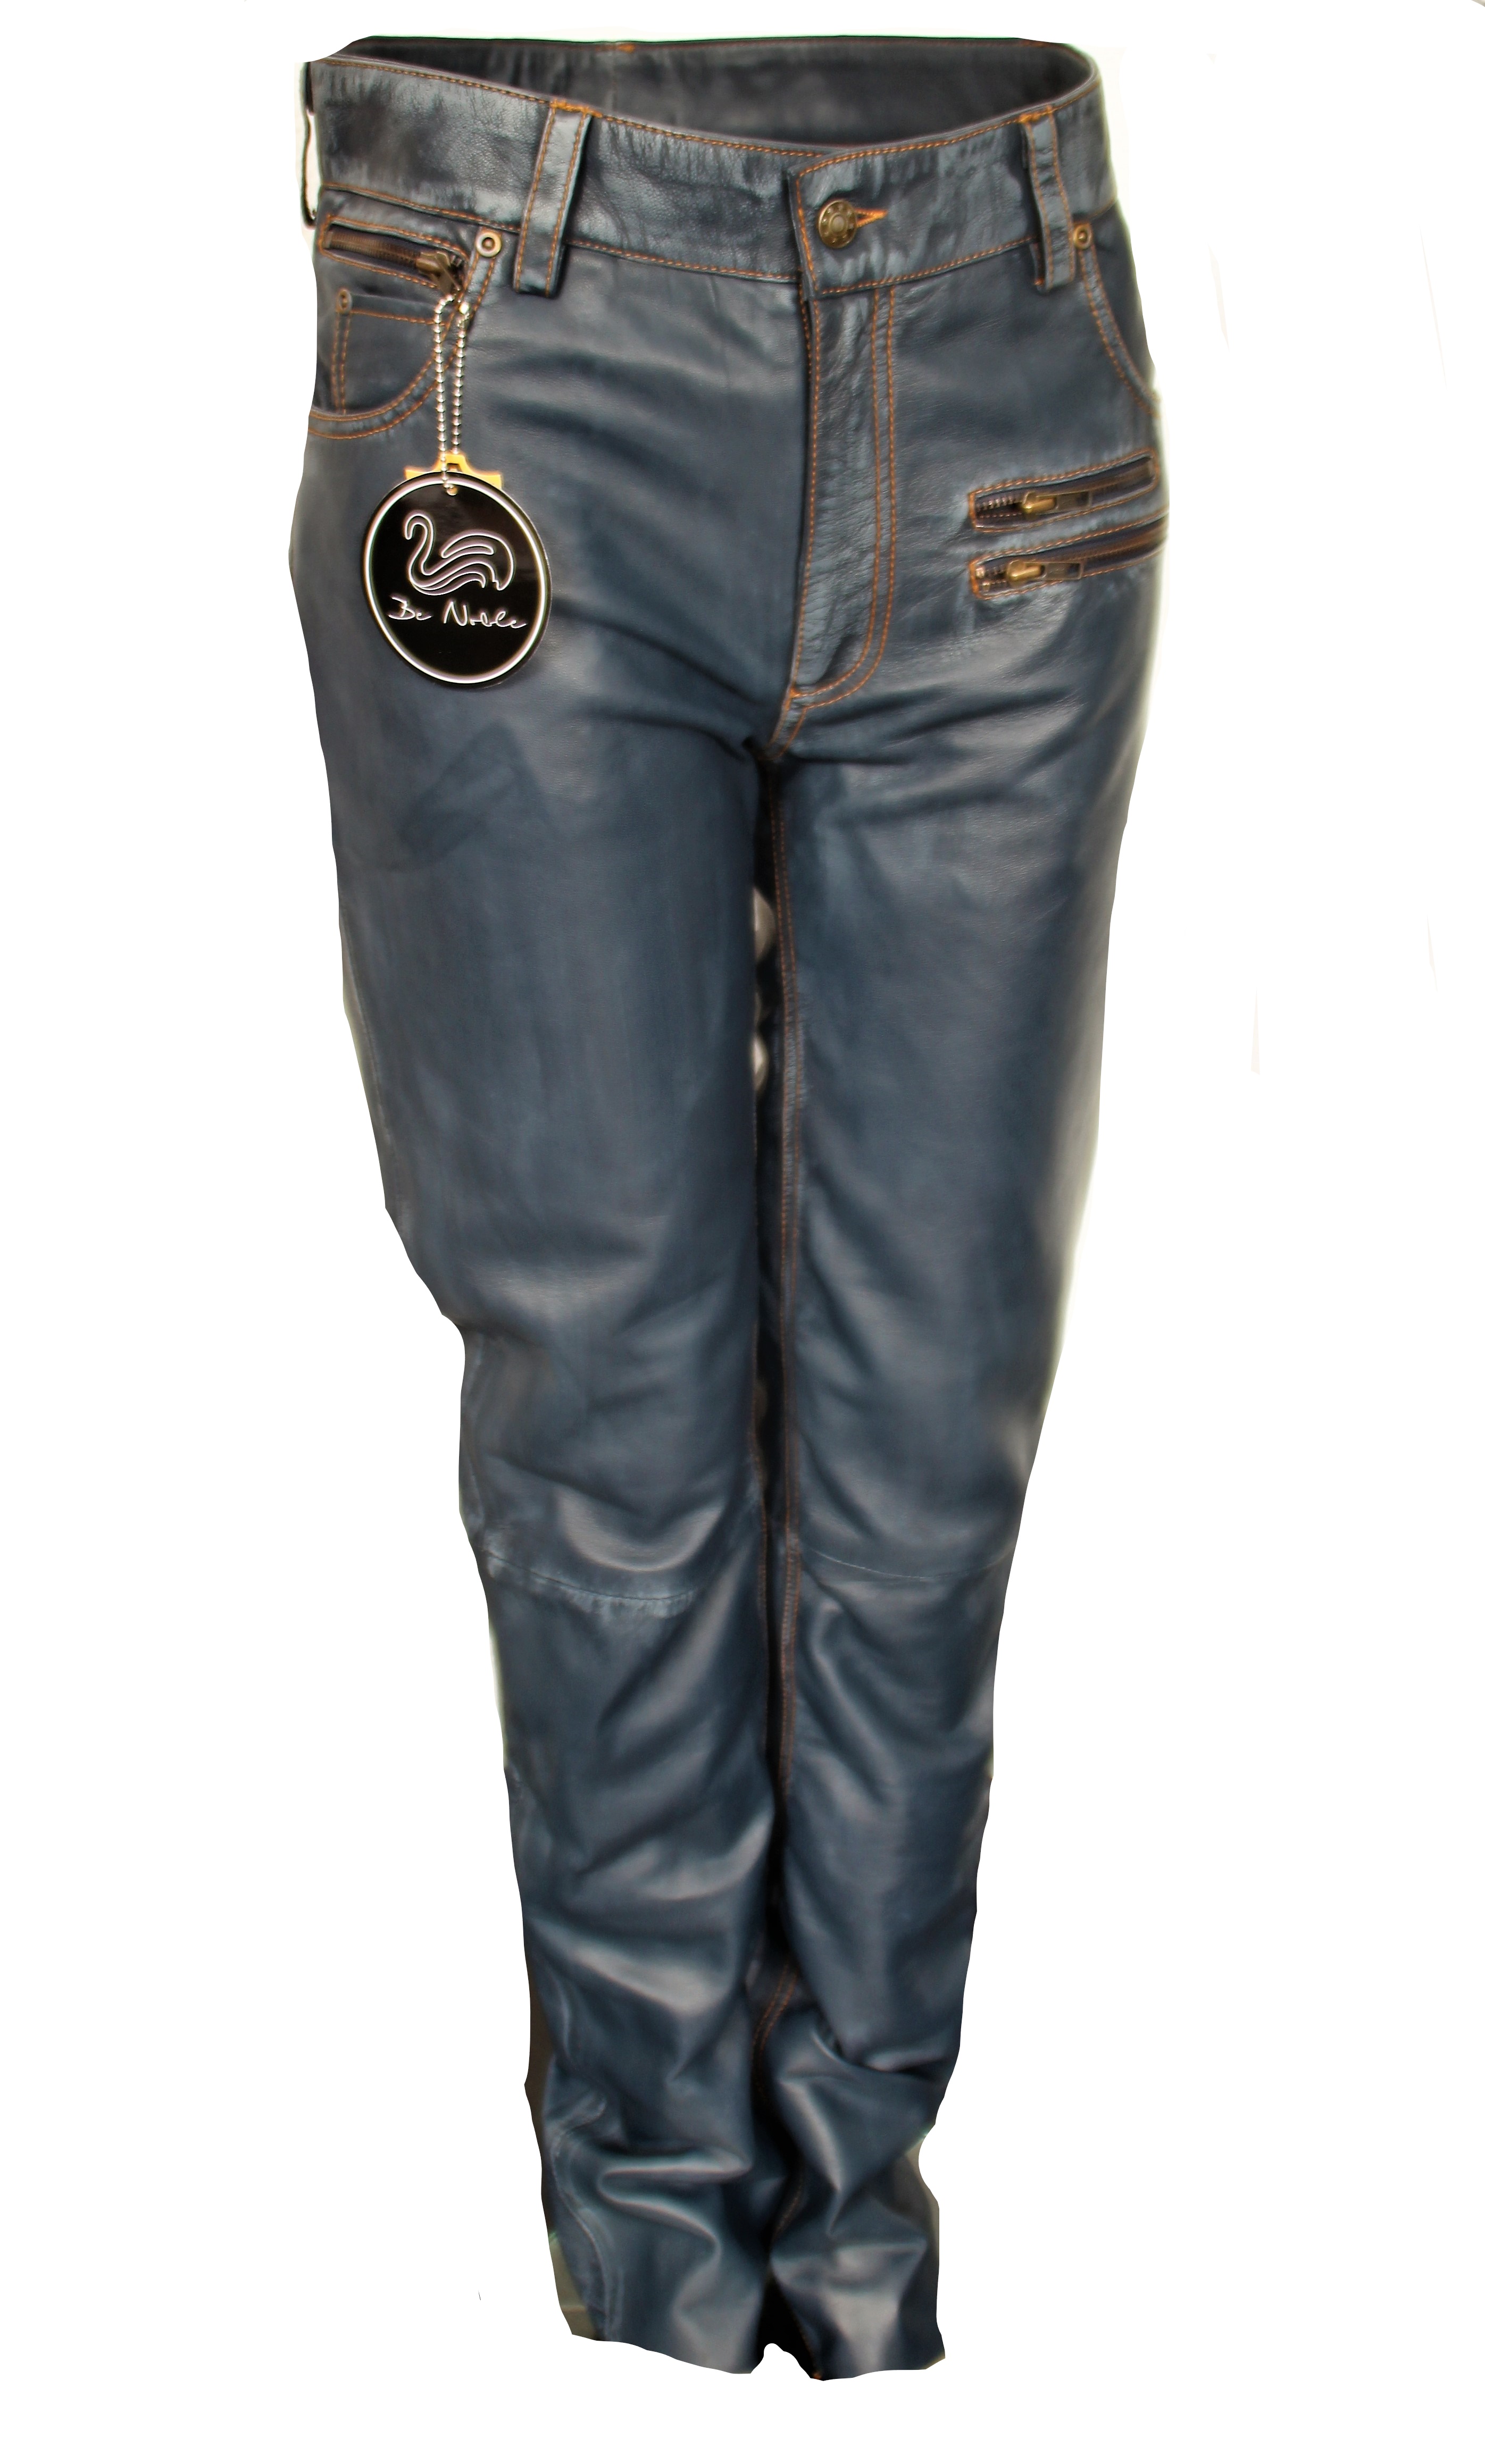 Pantalones de cuero como jeans de cuero de diseño en cuero genuino azul oscuro